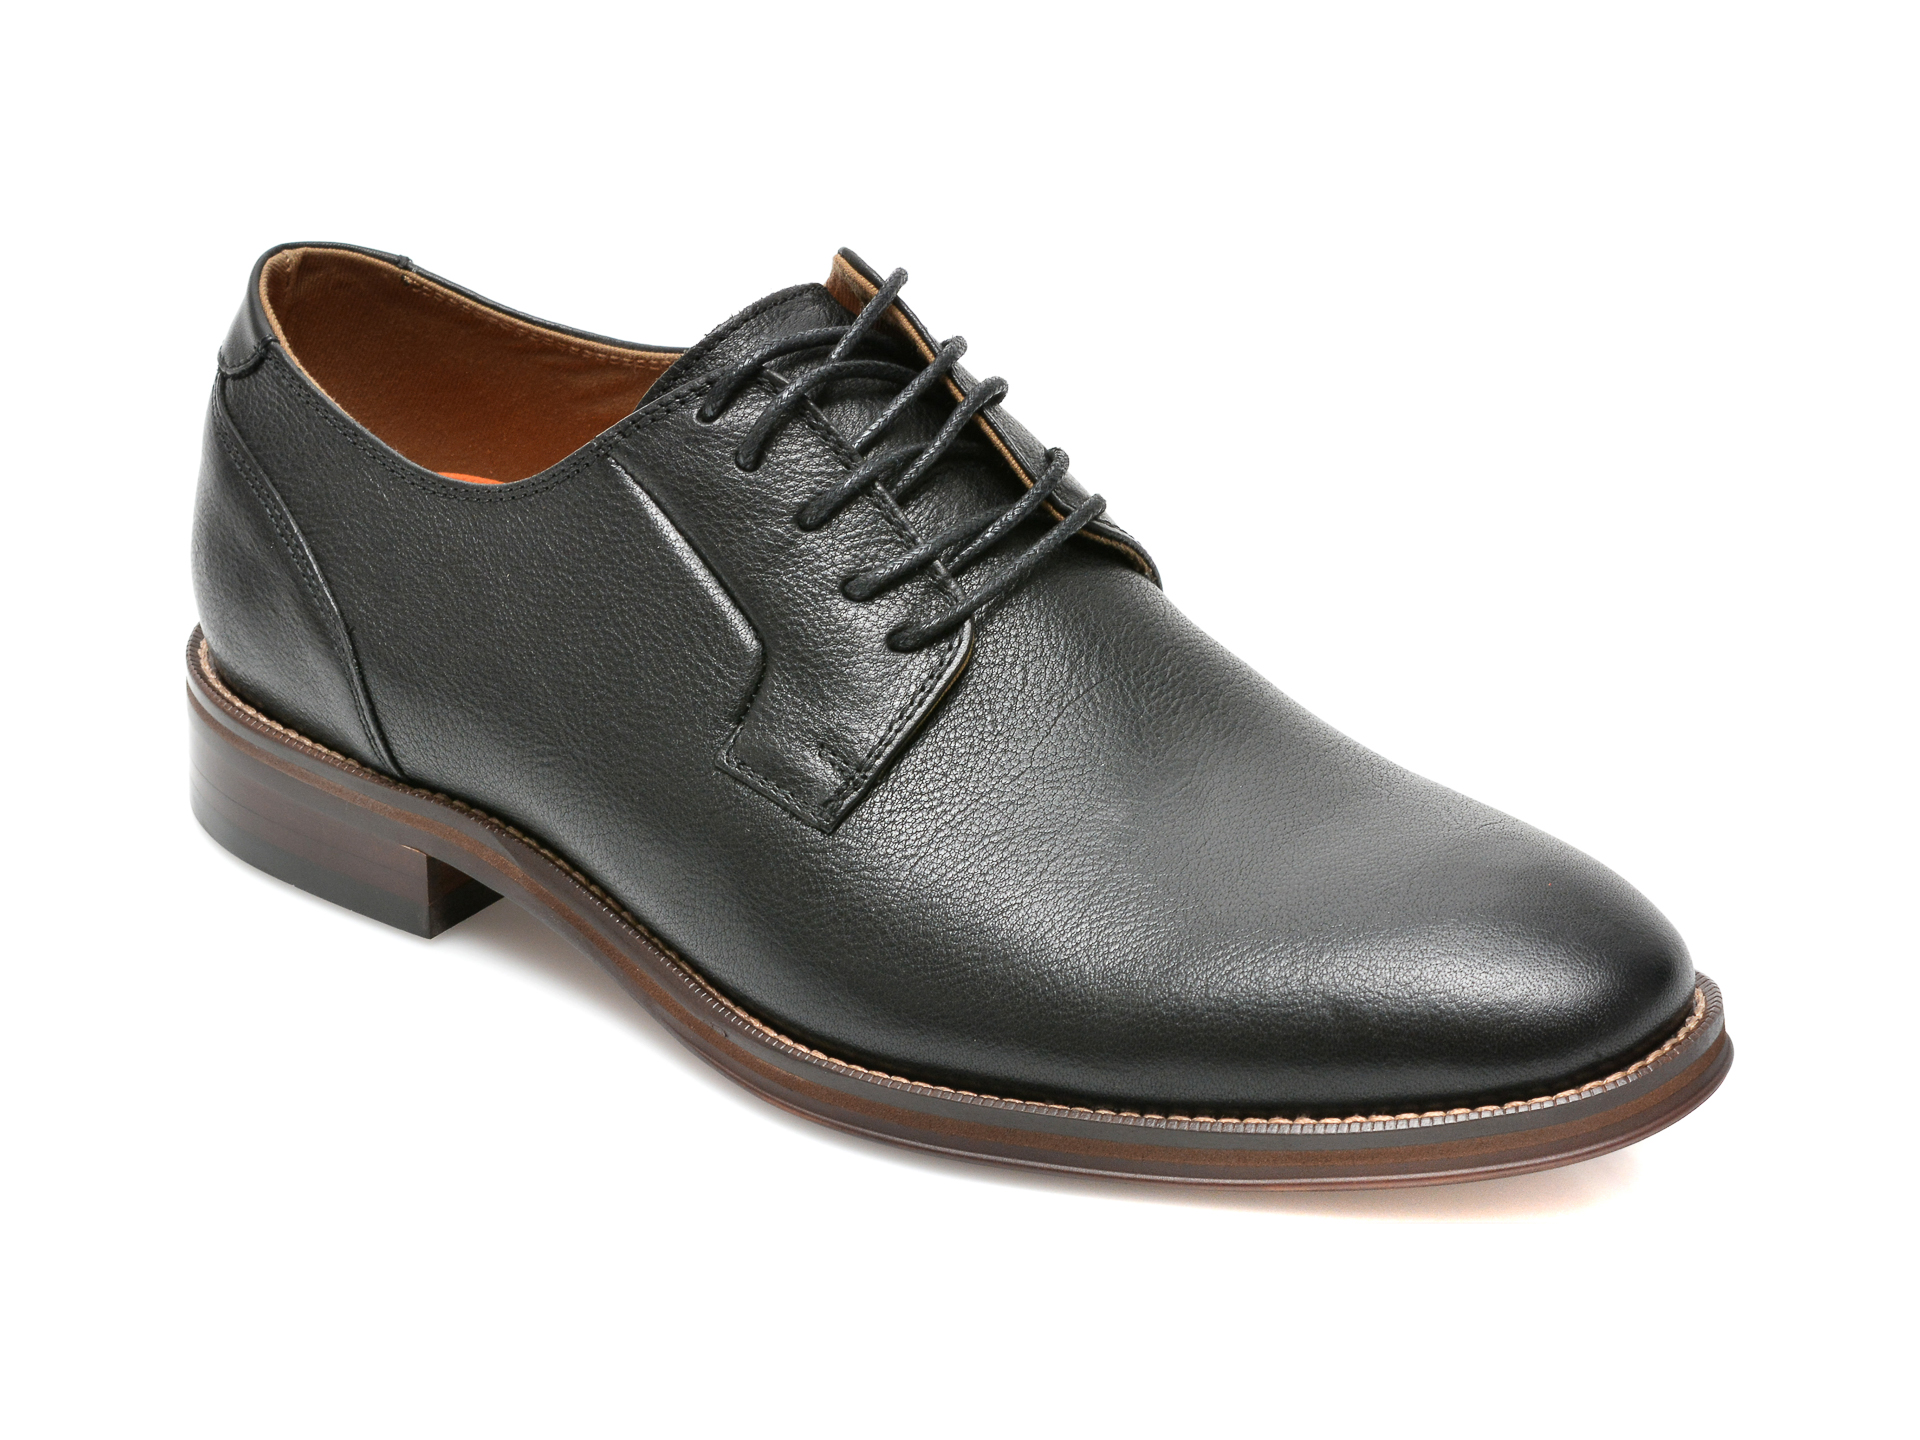 Pantofi ALDO negri, Iezeruflex001, din piele naturala Aldo Aldo